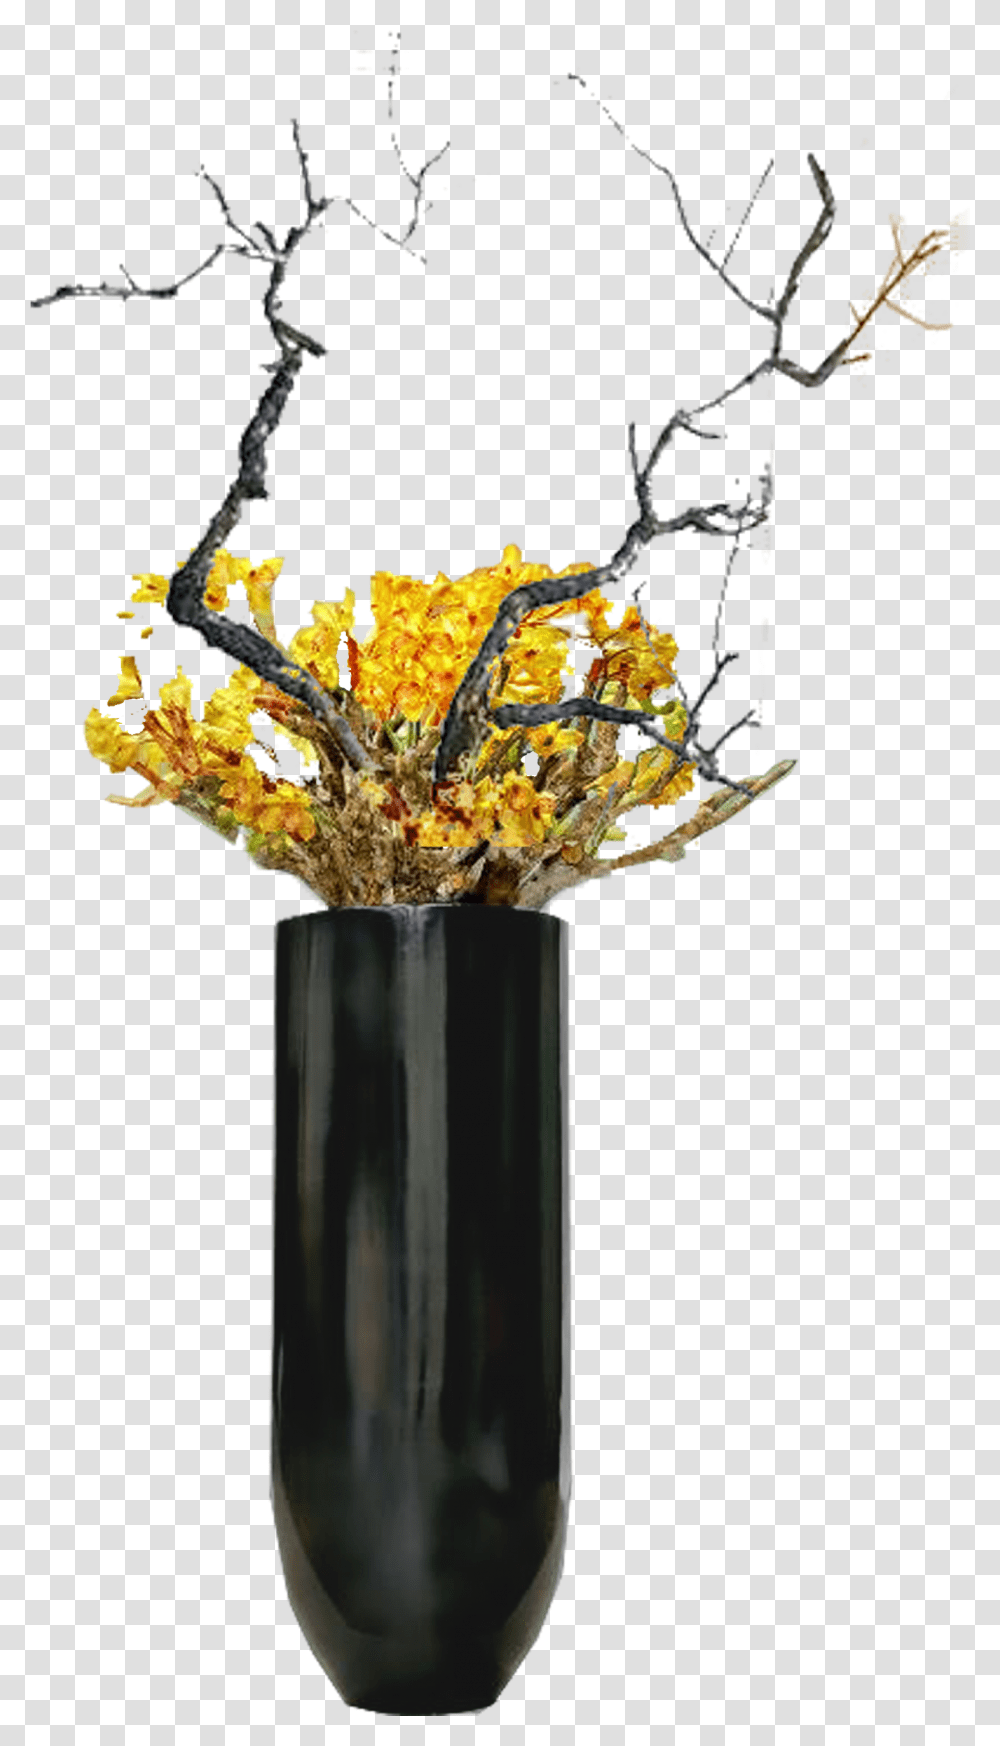 Vase, Plant, Jar, Pottery, Ikebana Transparent Png